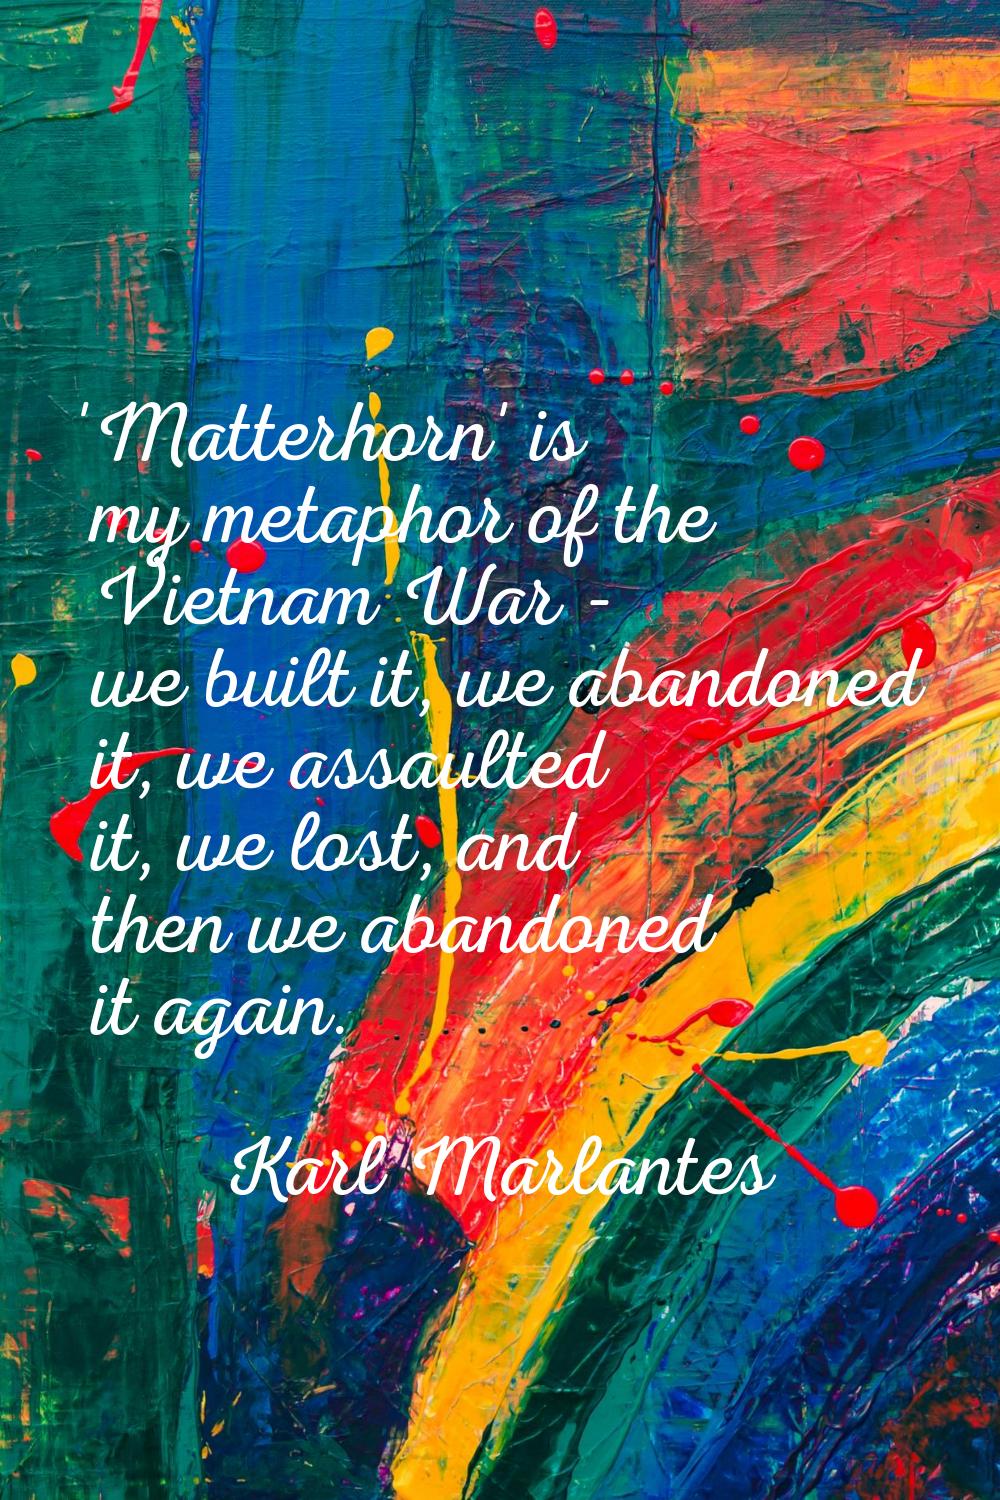 'Matterhorn' is my metaphor of the Vietnam War - we built it, we abandoned it, we assaulted it, we 